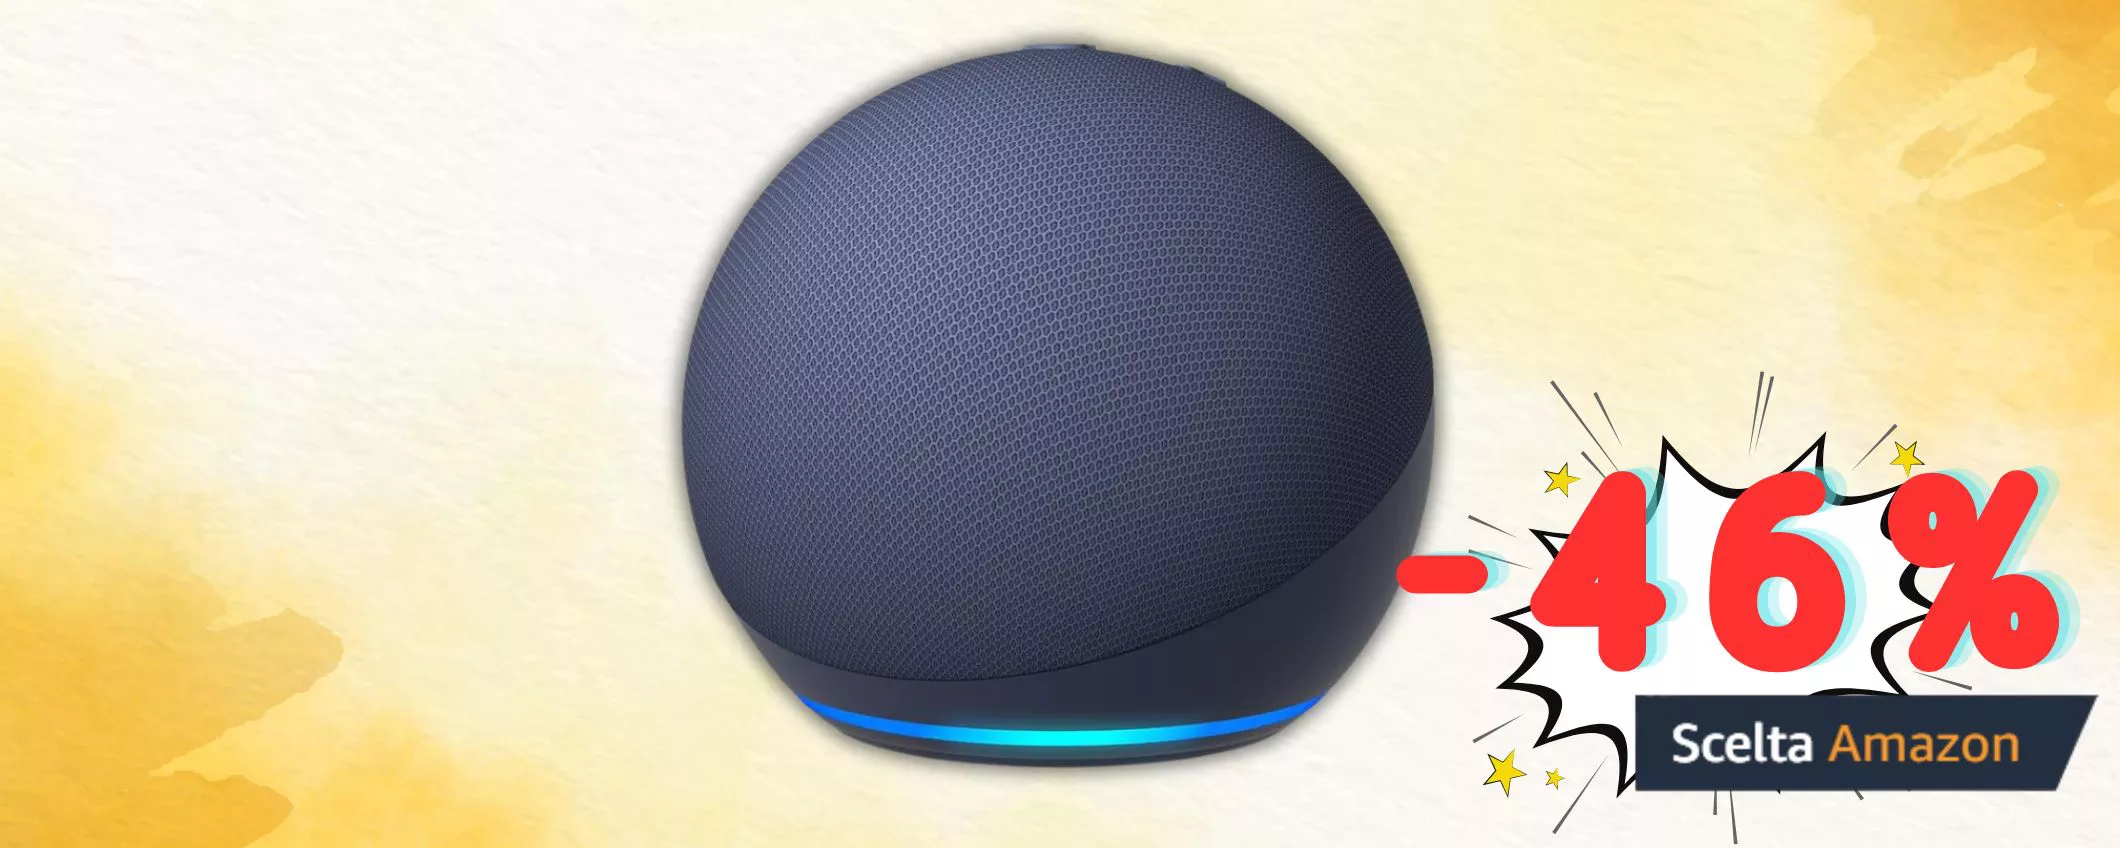 Alexa a casa tua A SOLI 34€: approfitta dello sconto del 46% sull'Echo Dot di 5ª gen.